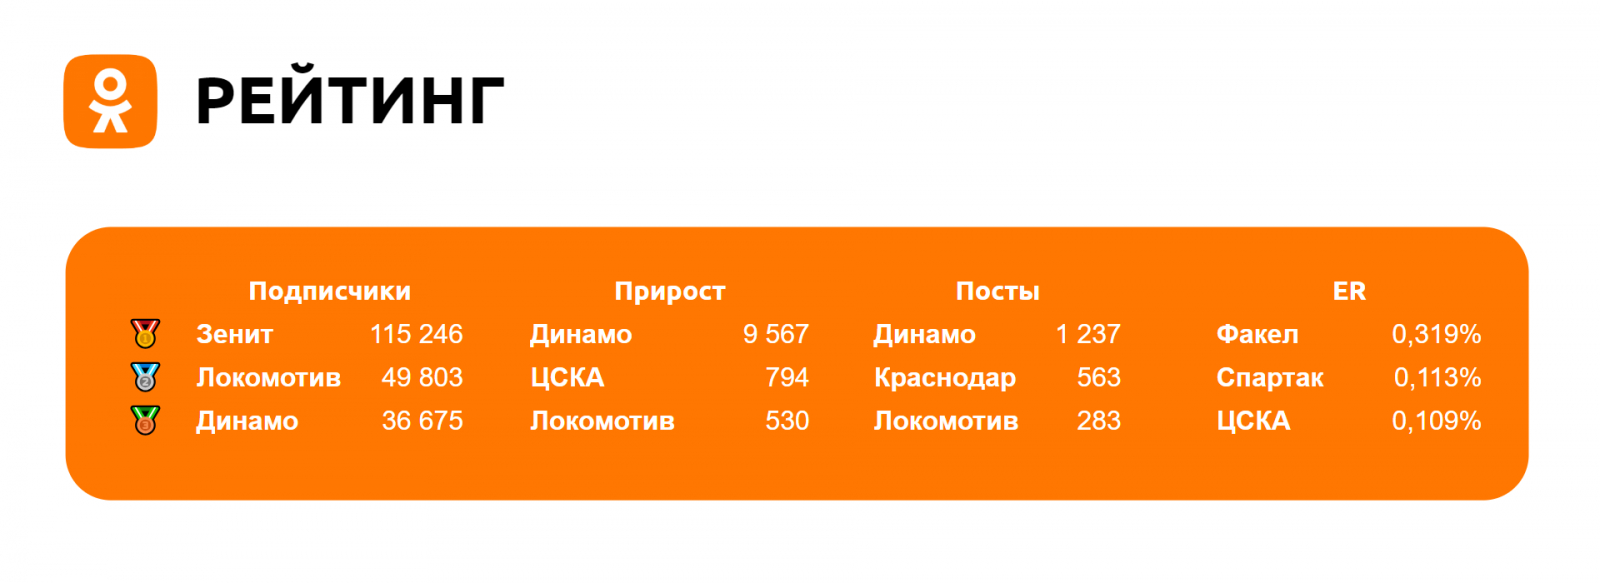 Хоть в топ-3 по публикациям вошел "Краснодар", по другим показателям остаются практически те же игроки, что и в социальных медиа ранее (ВК и Telegram).